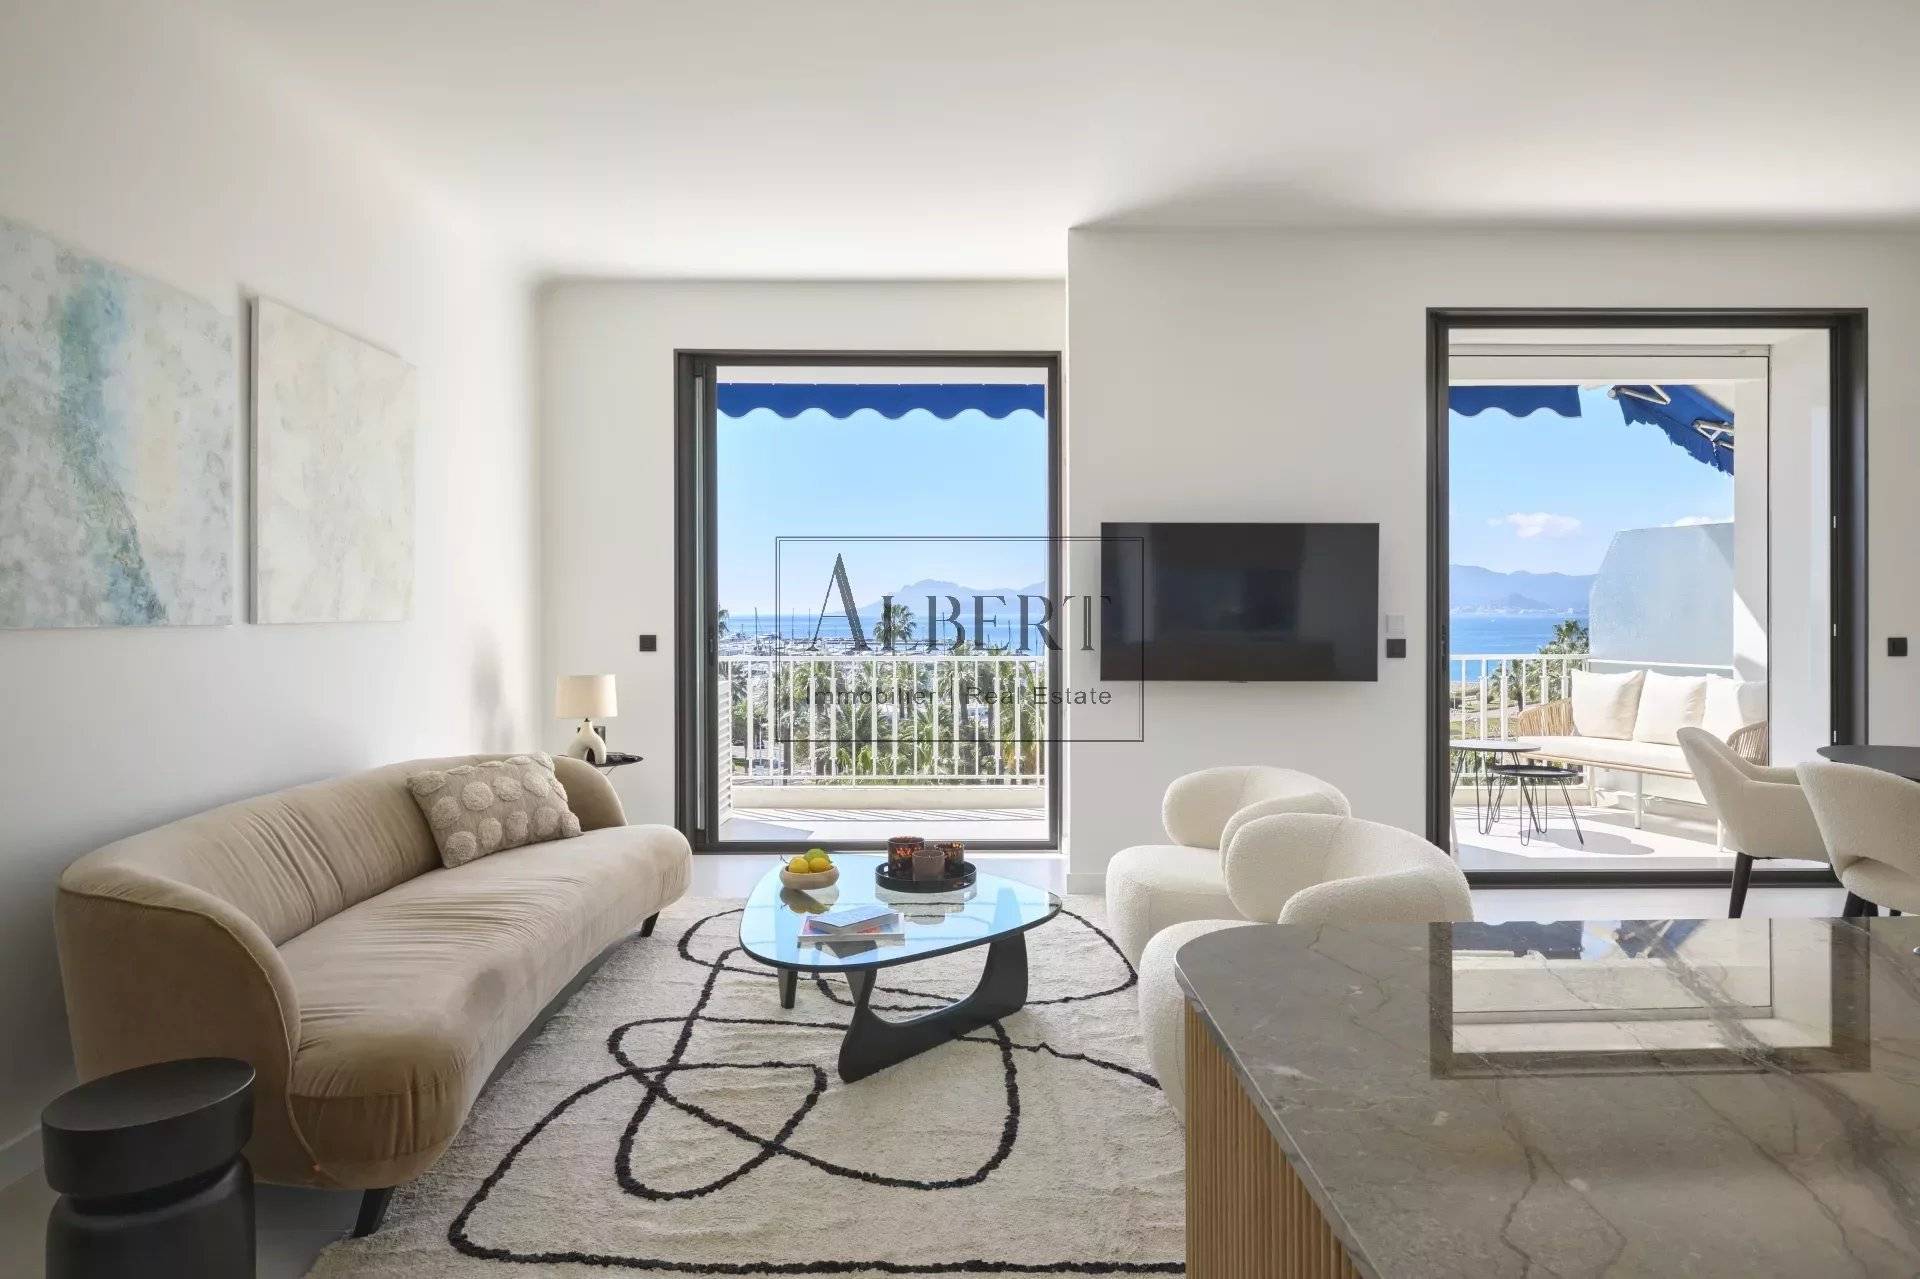 Vente Appartement 99m² 4 Pièces à Cannes (06400) - Albert Immobilier